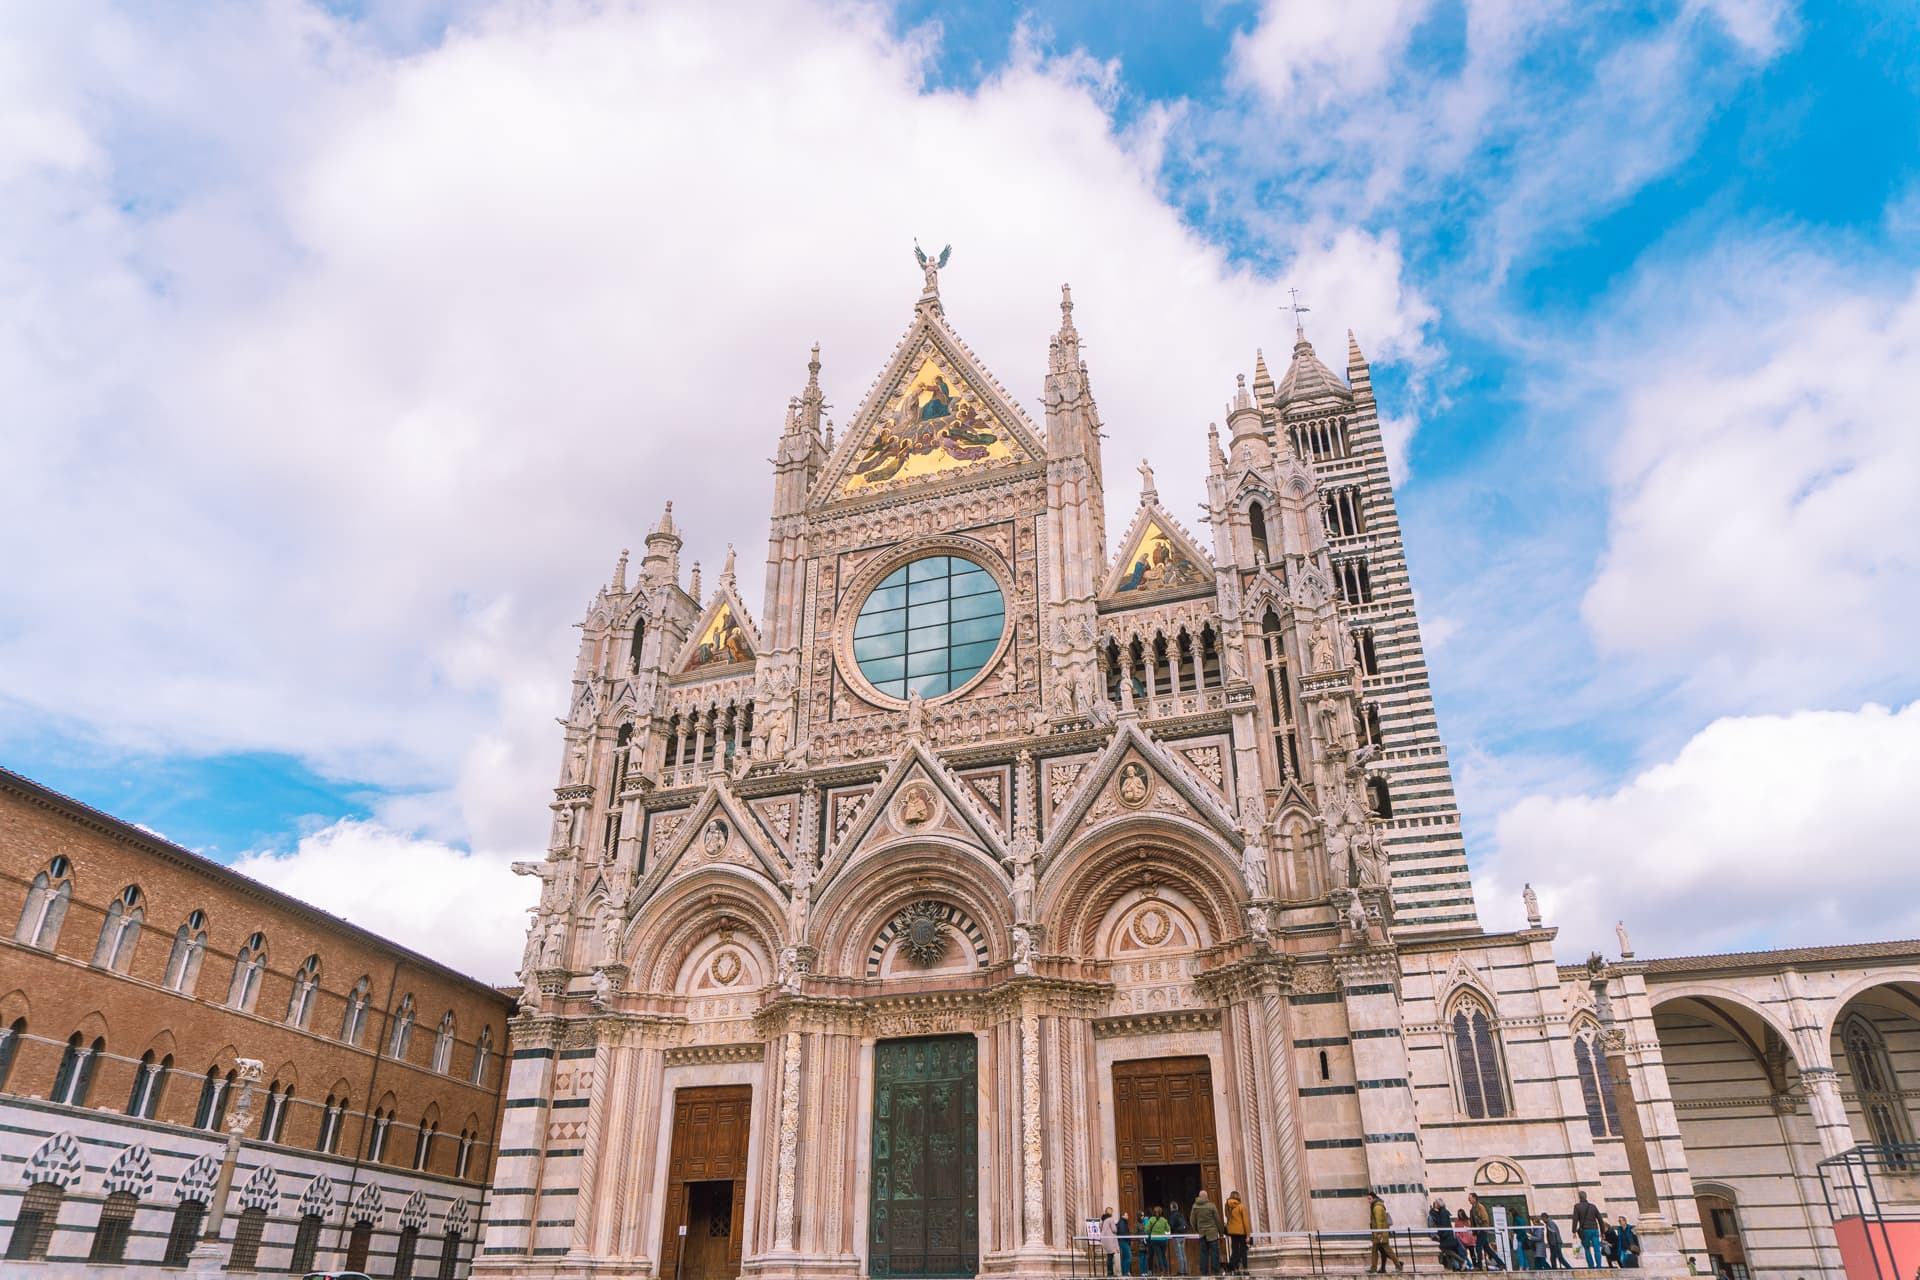 Fasada Duomo w Sienie | Zwiedzanie Sieny